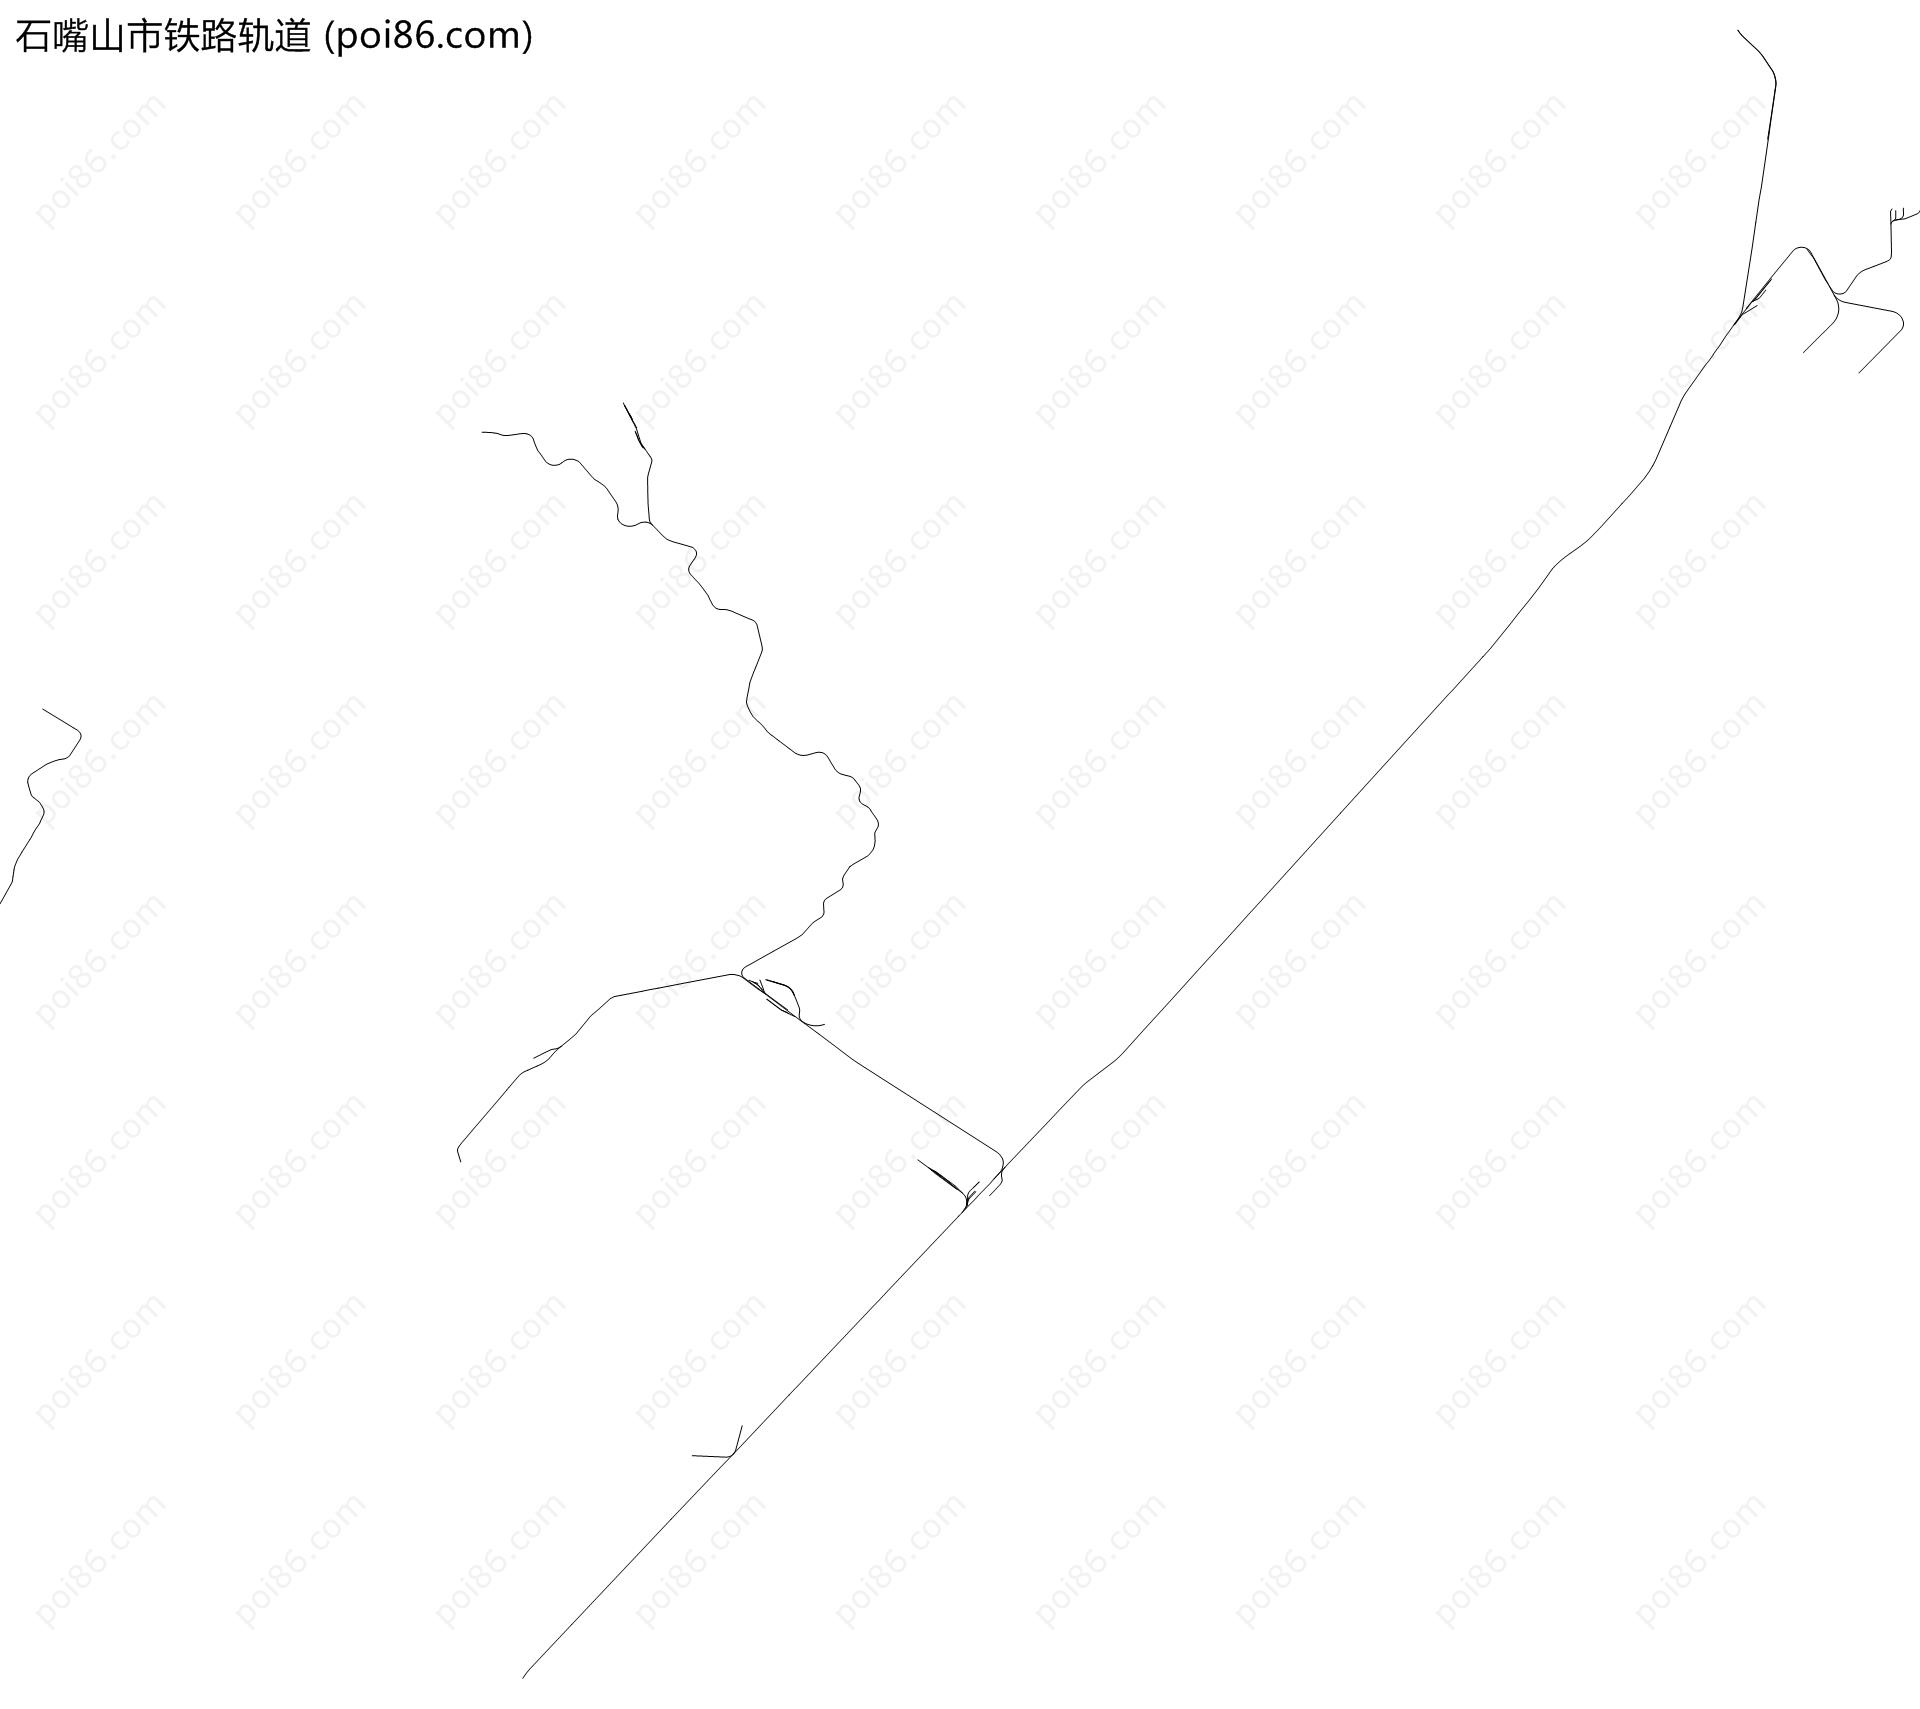 石嘴山市铁路轨道地图